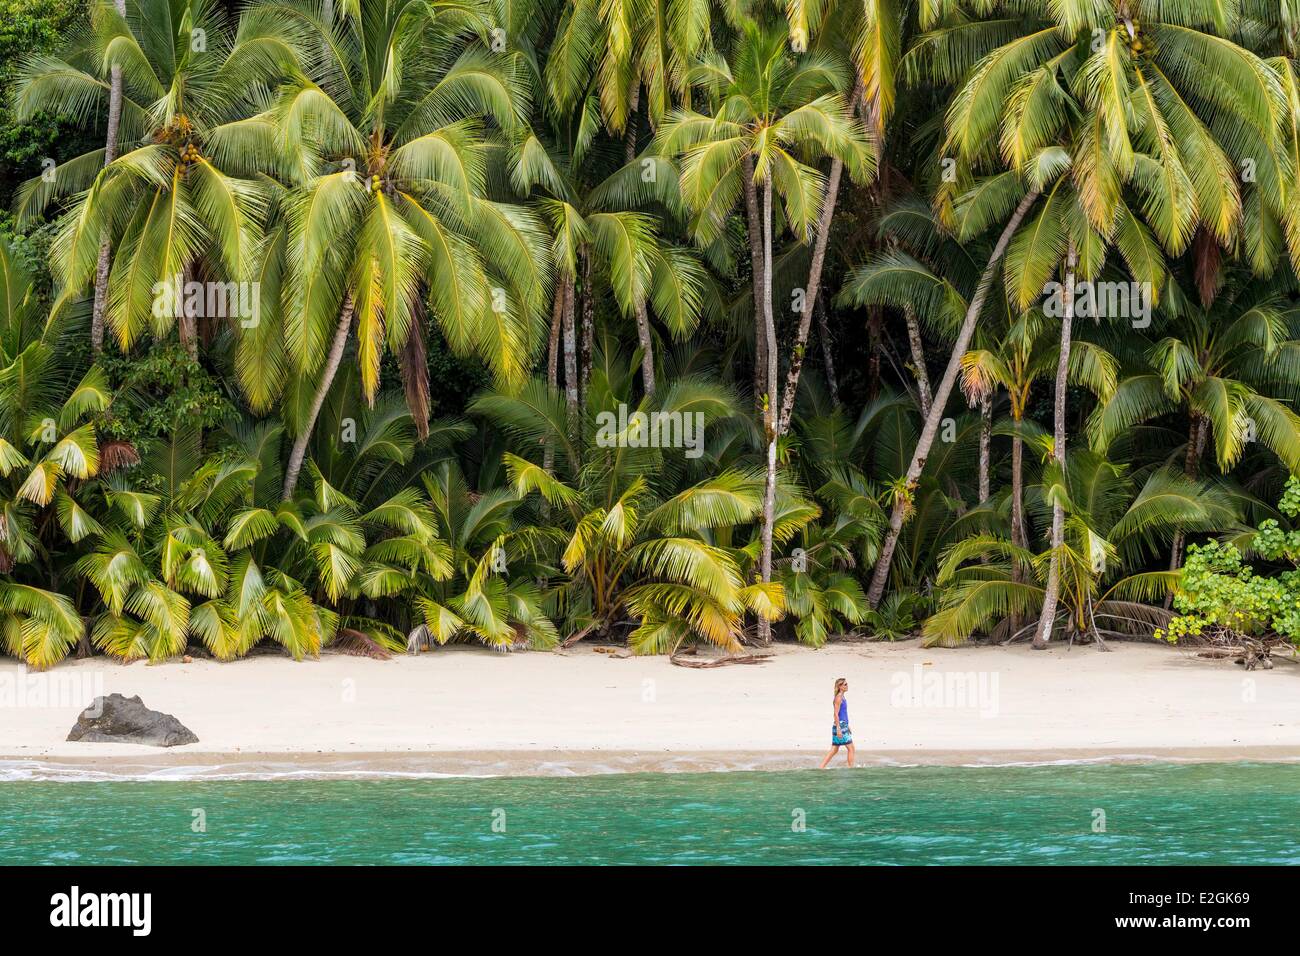 Provinz Veraguas Panama als Weltkulturerbe von der UNESCO seit 2005 Rancheria Insel Palmen gesäumten Strand Golf von Chiriquí Nationalpark Coiba aufgeführt Stockfoto